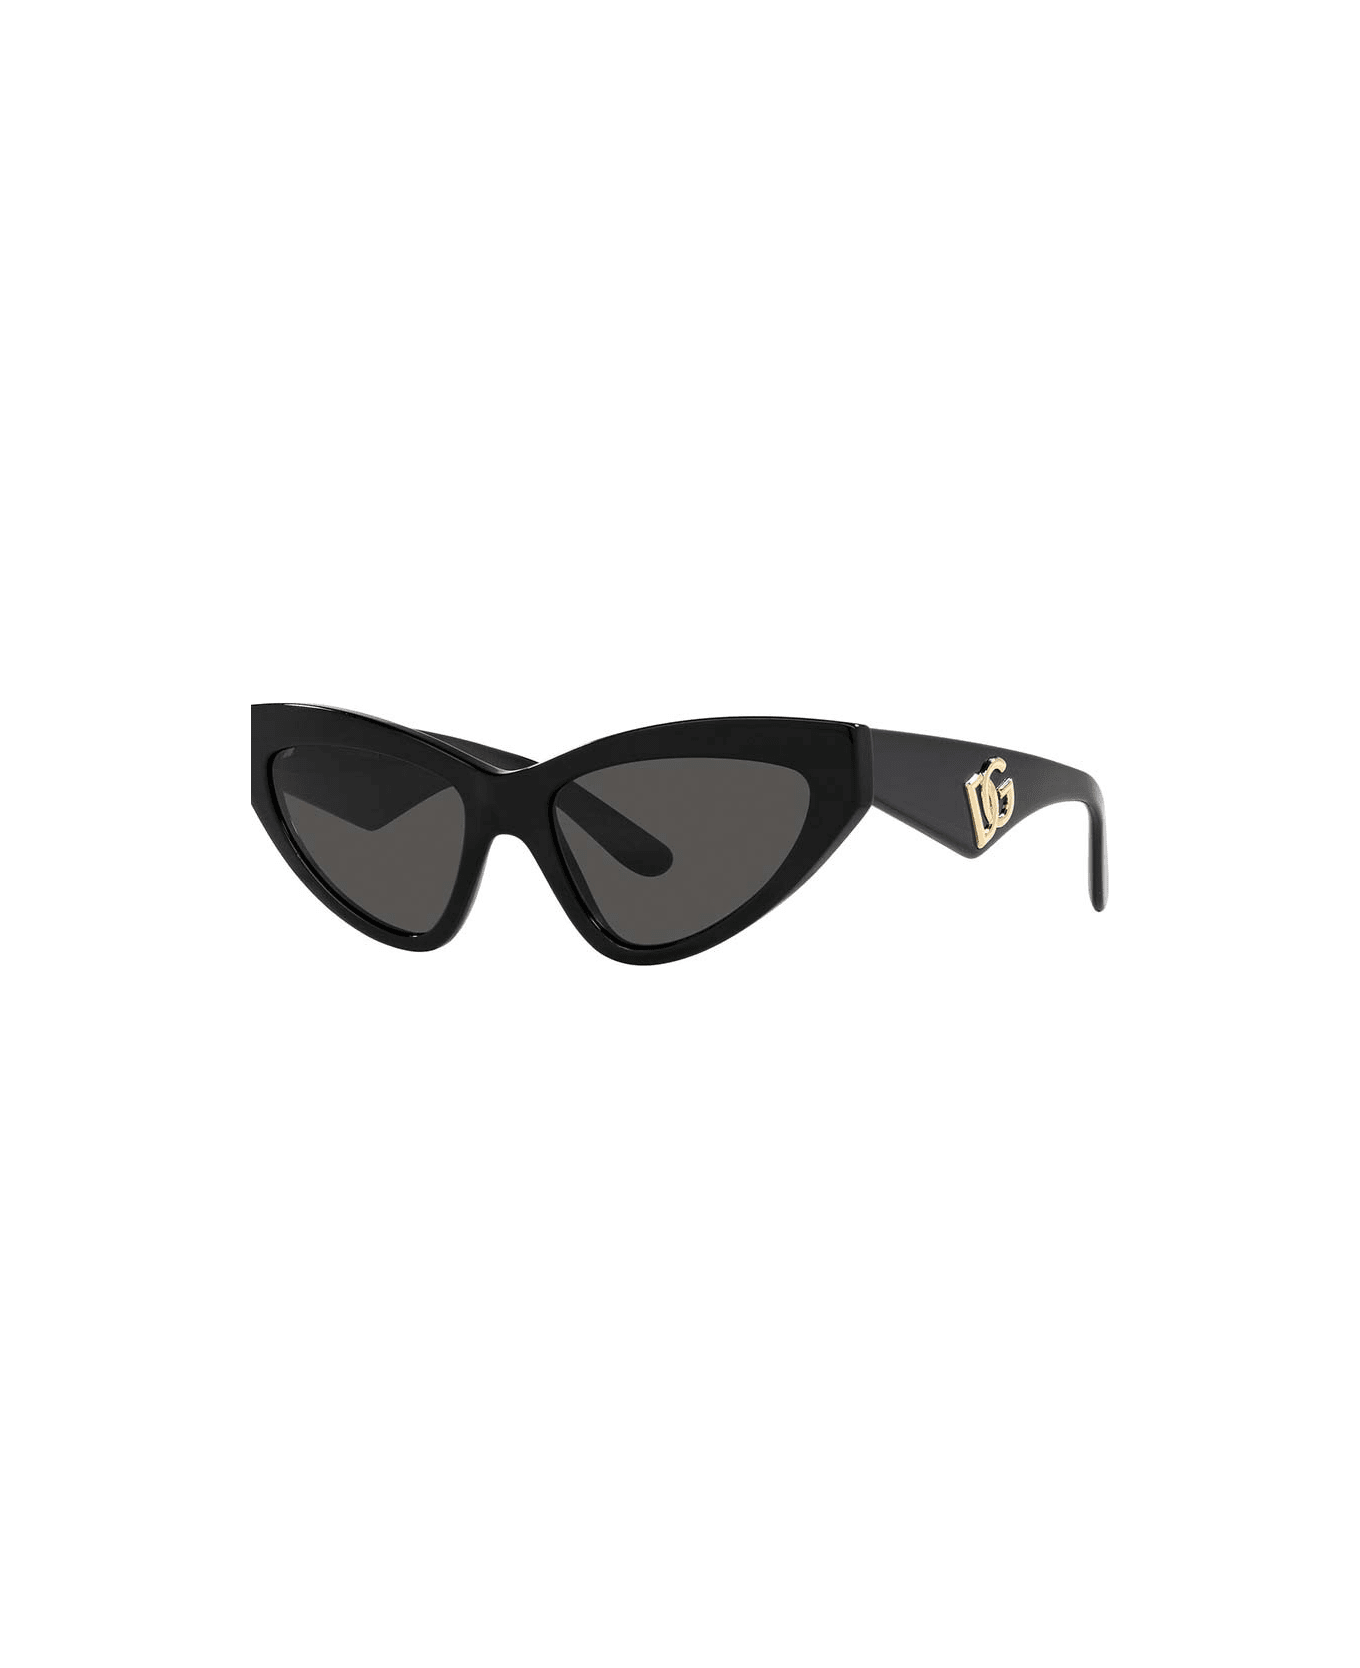 Ve4409 Red Sunglasses Eyewear Sunglasses - Nero/Nero